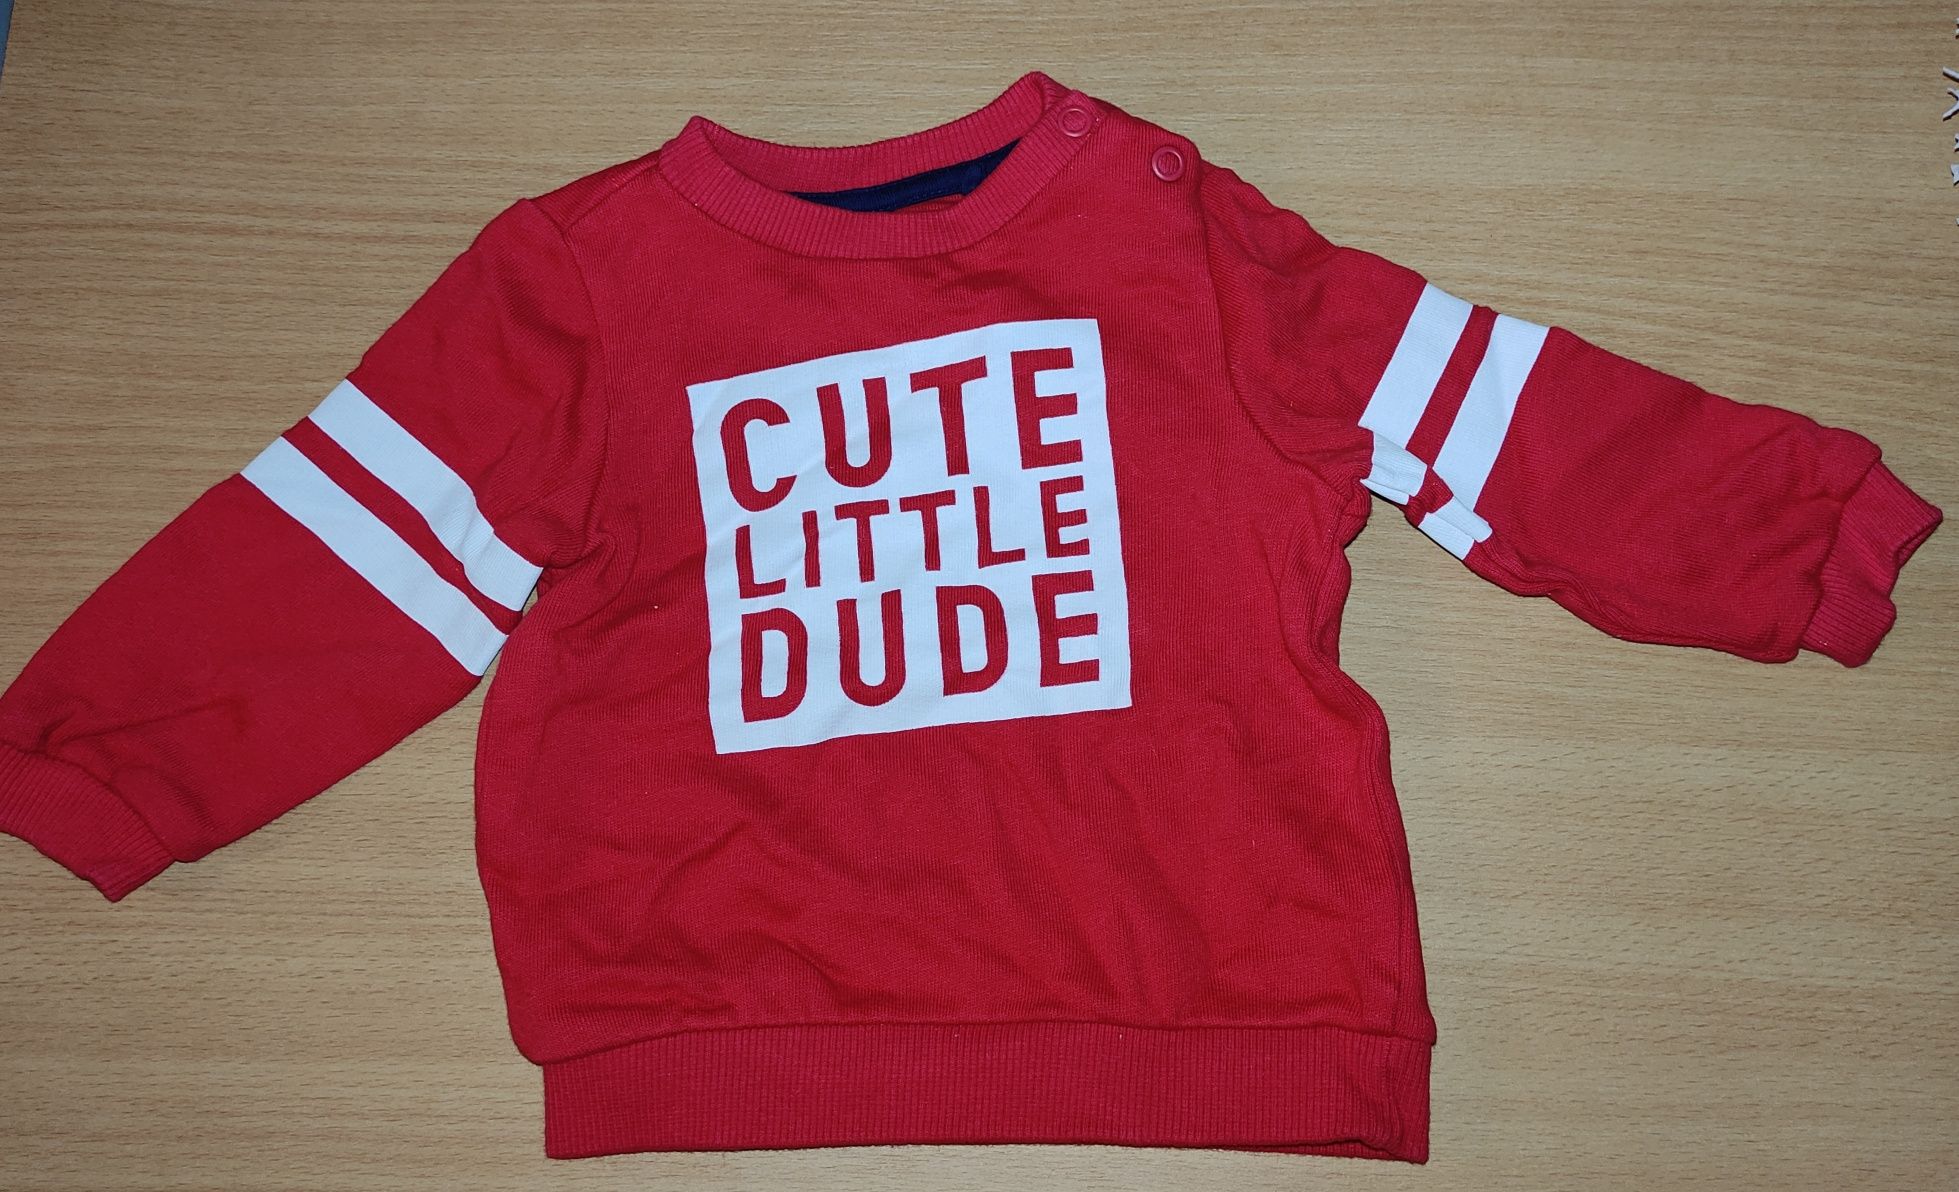 Czerwona bluza dla chłopca baby club r. 68